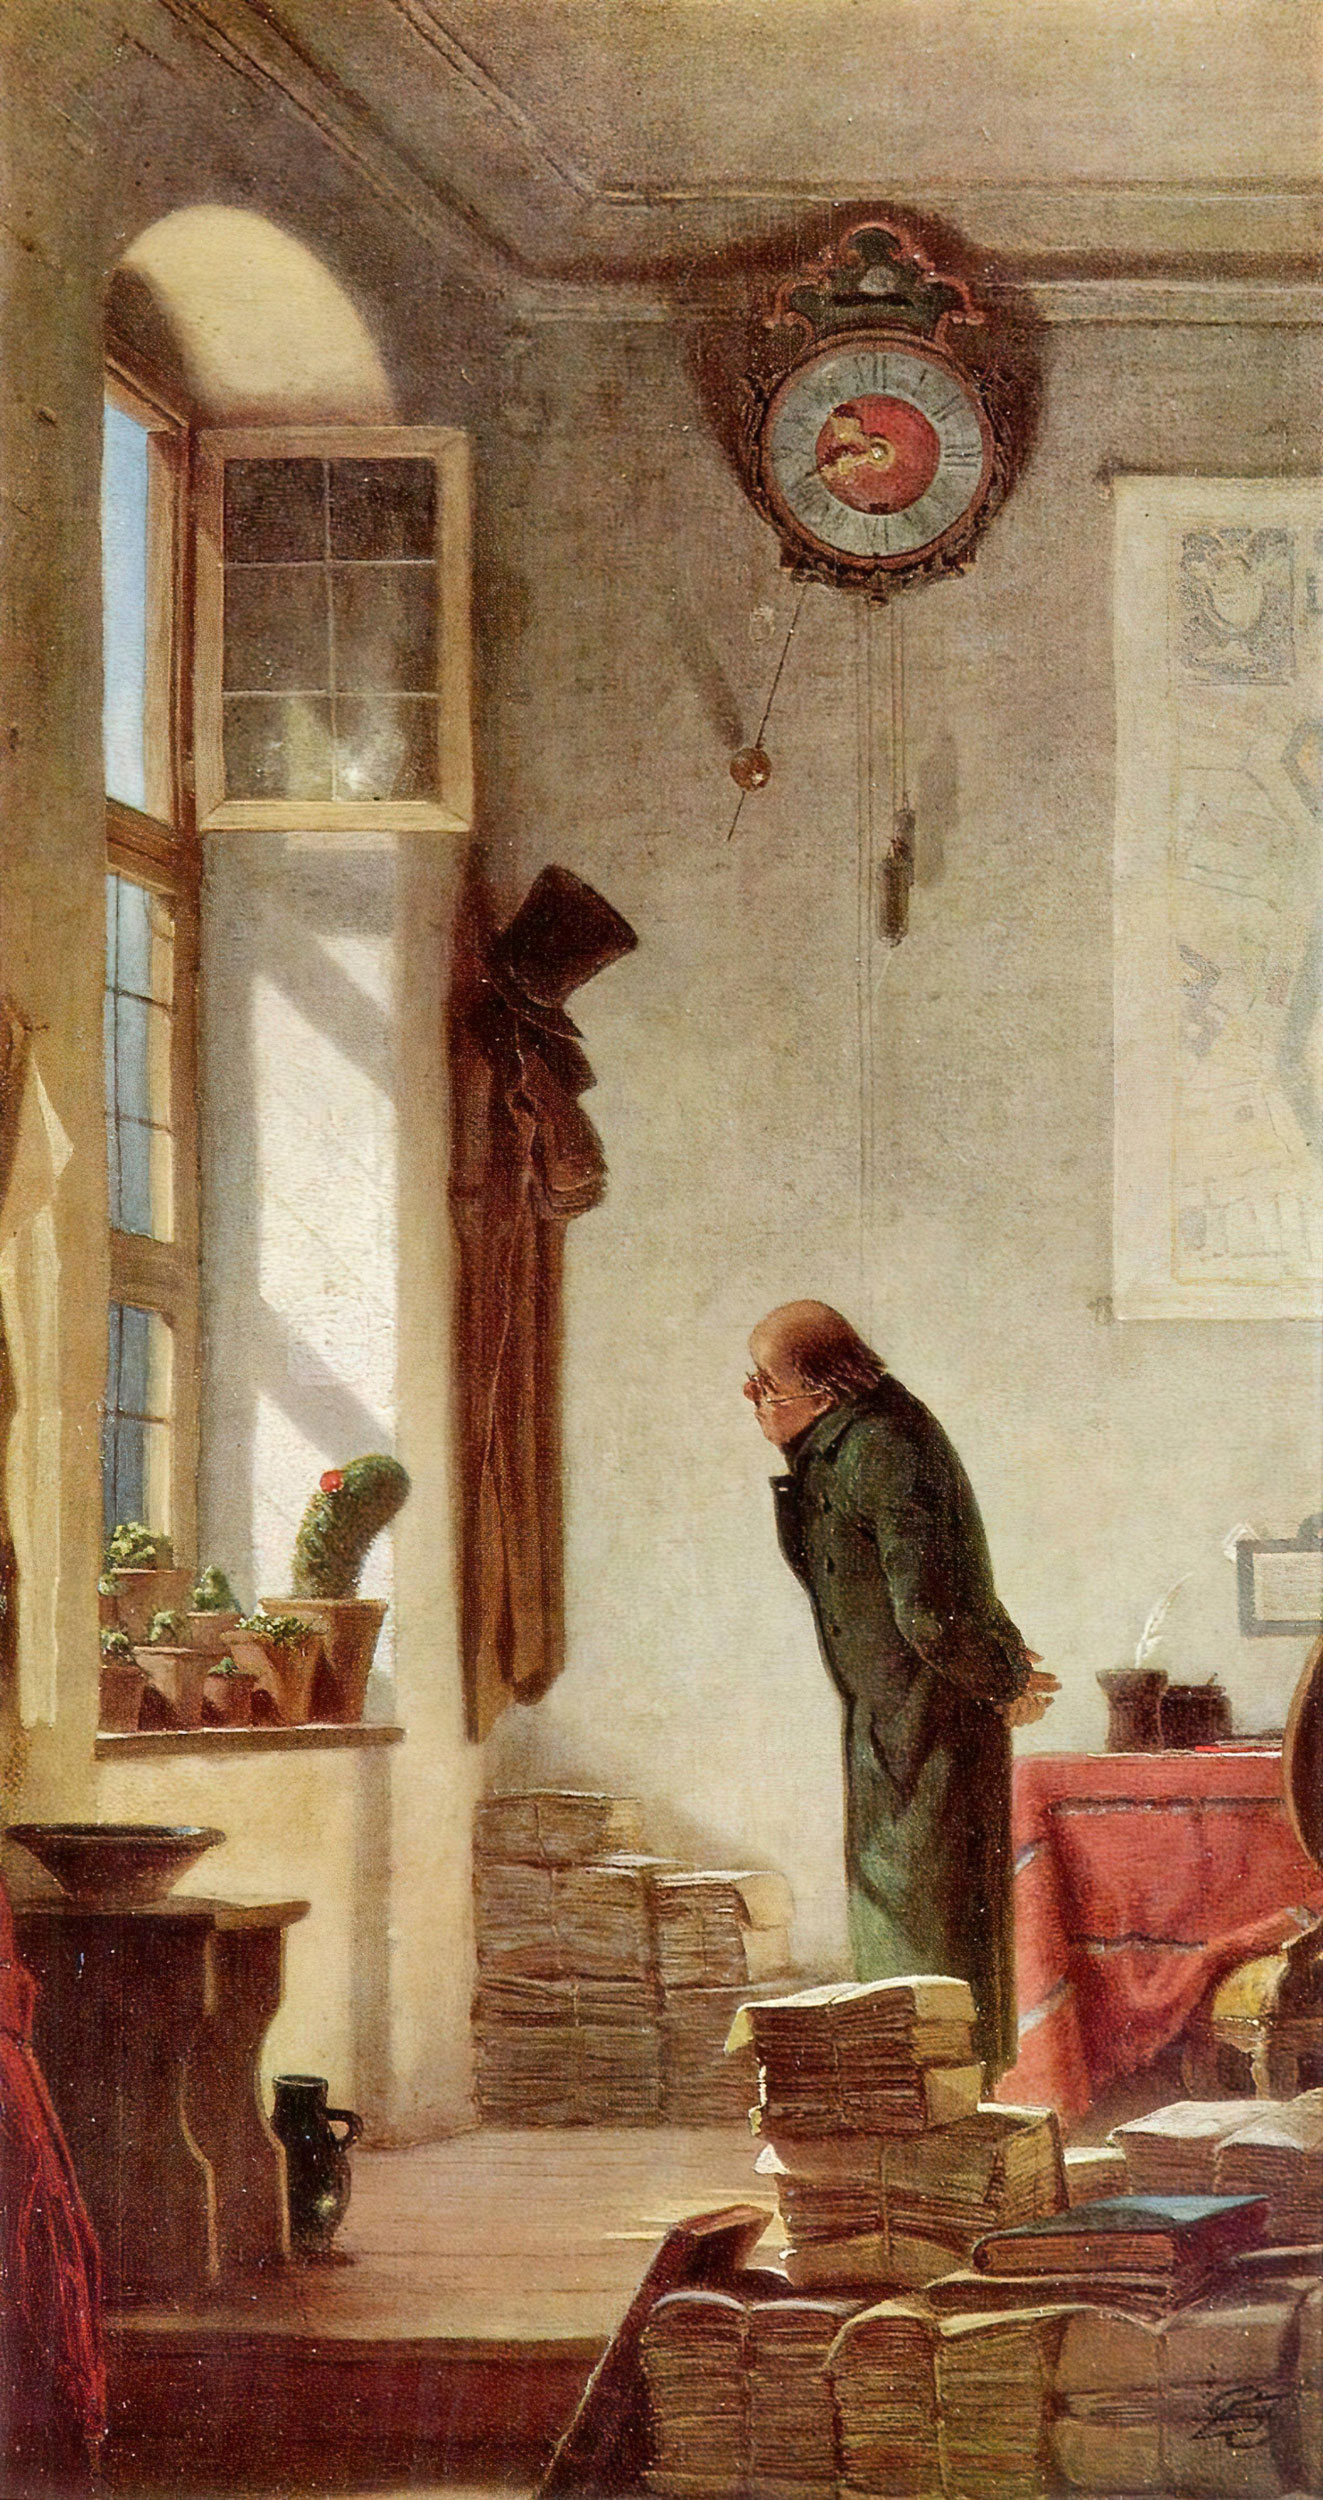 Carl Spitzweg - Der Kaktusliebhaber, 1850